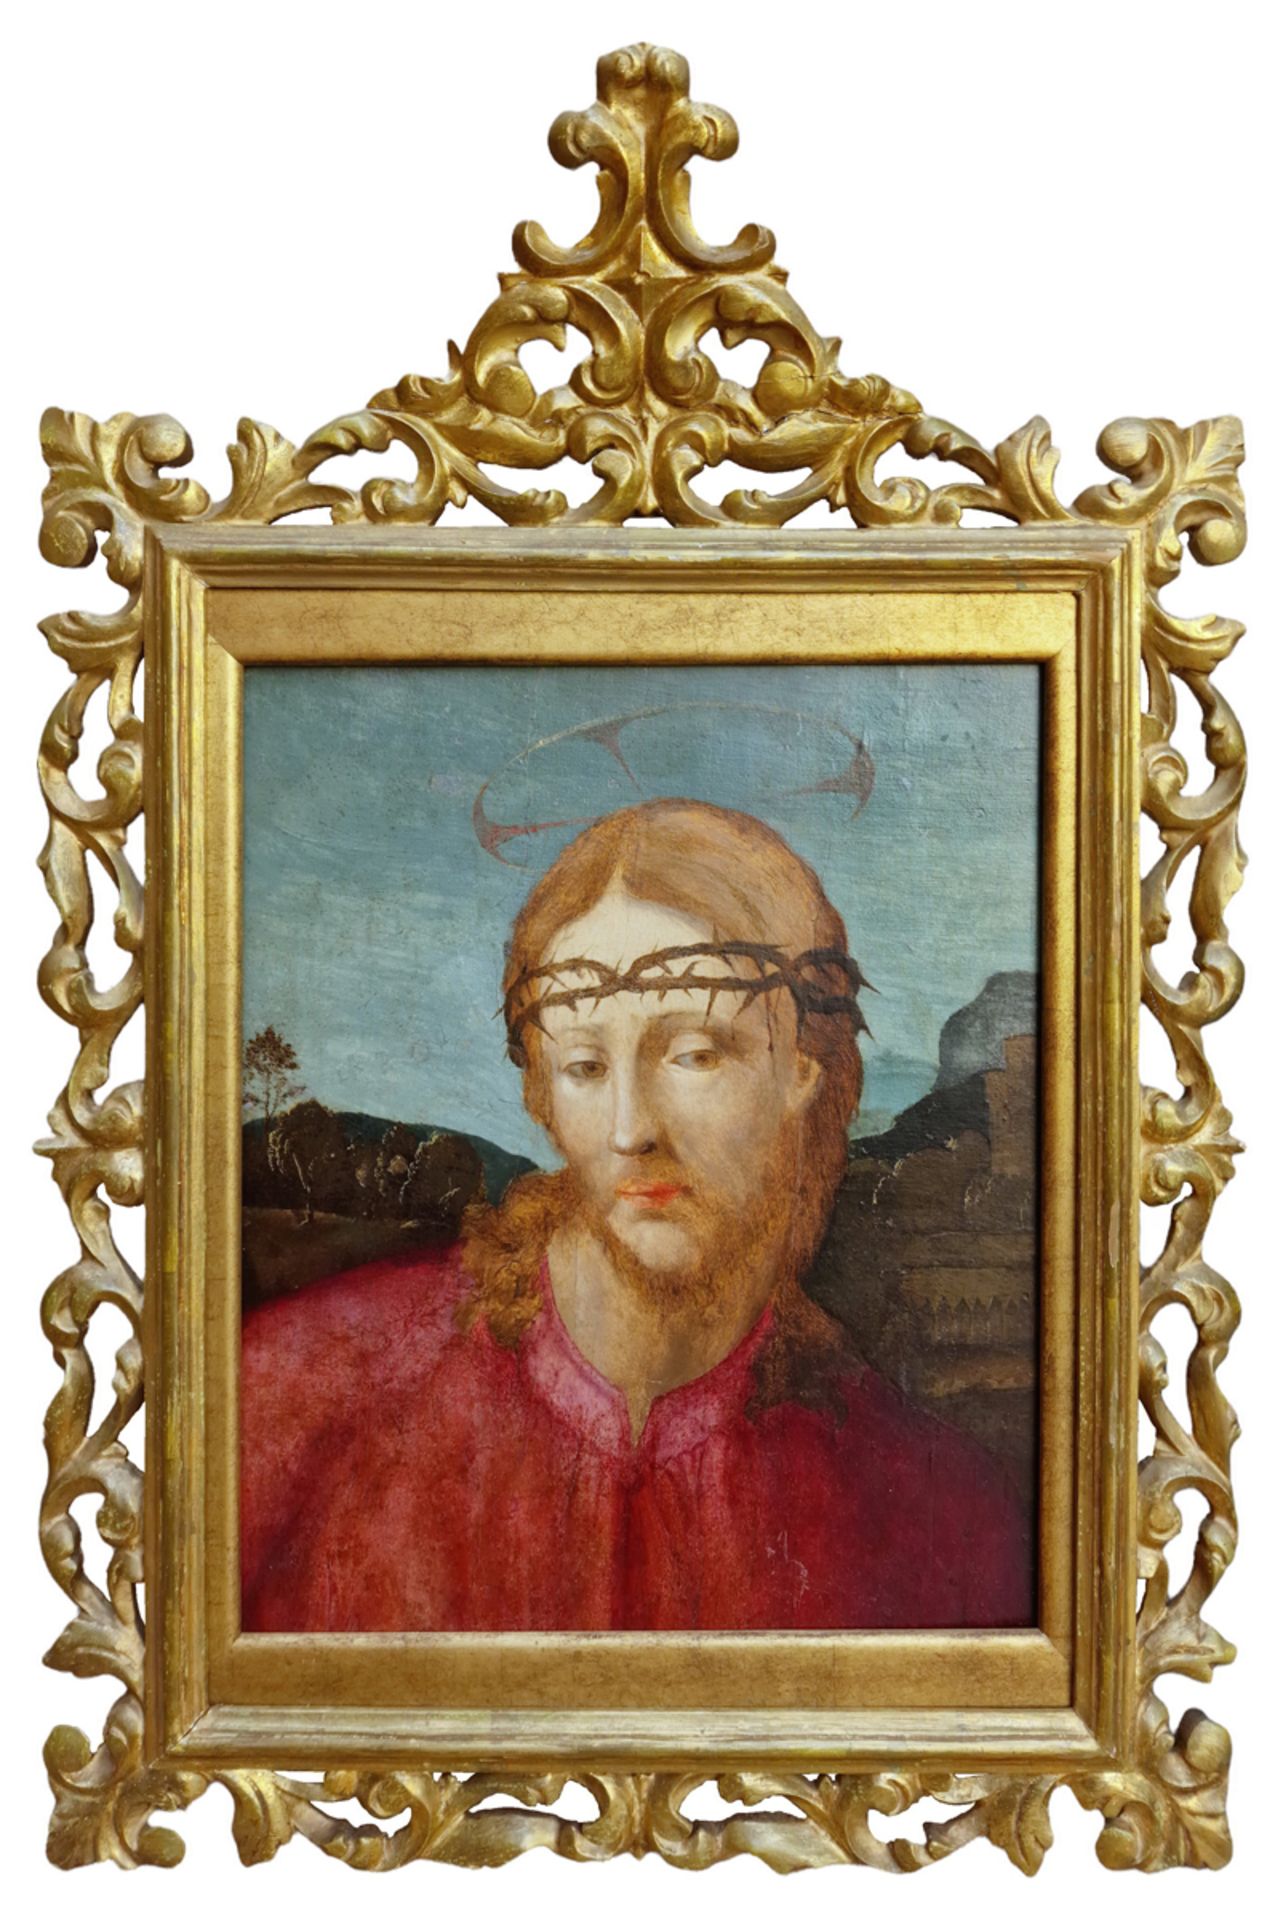 FRA BARTOLOMEO dit BACCIO della PORTA ( 1472-1517), attribué